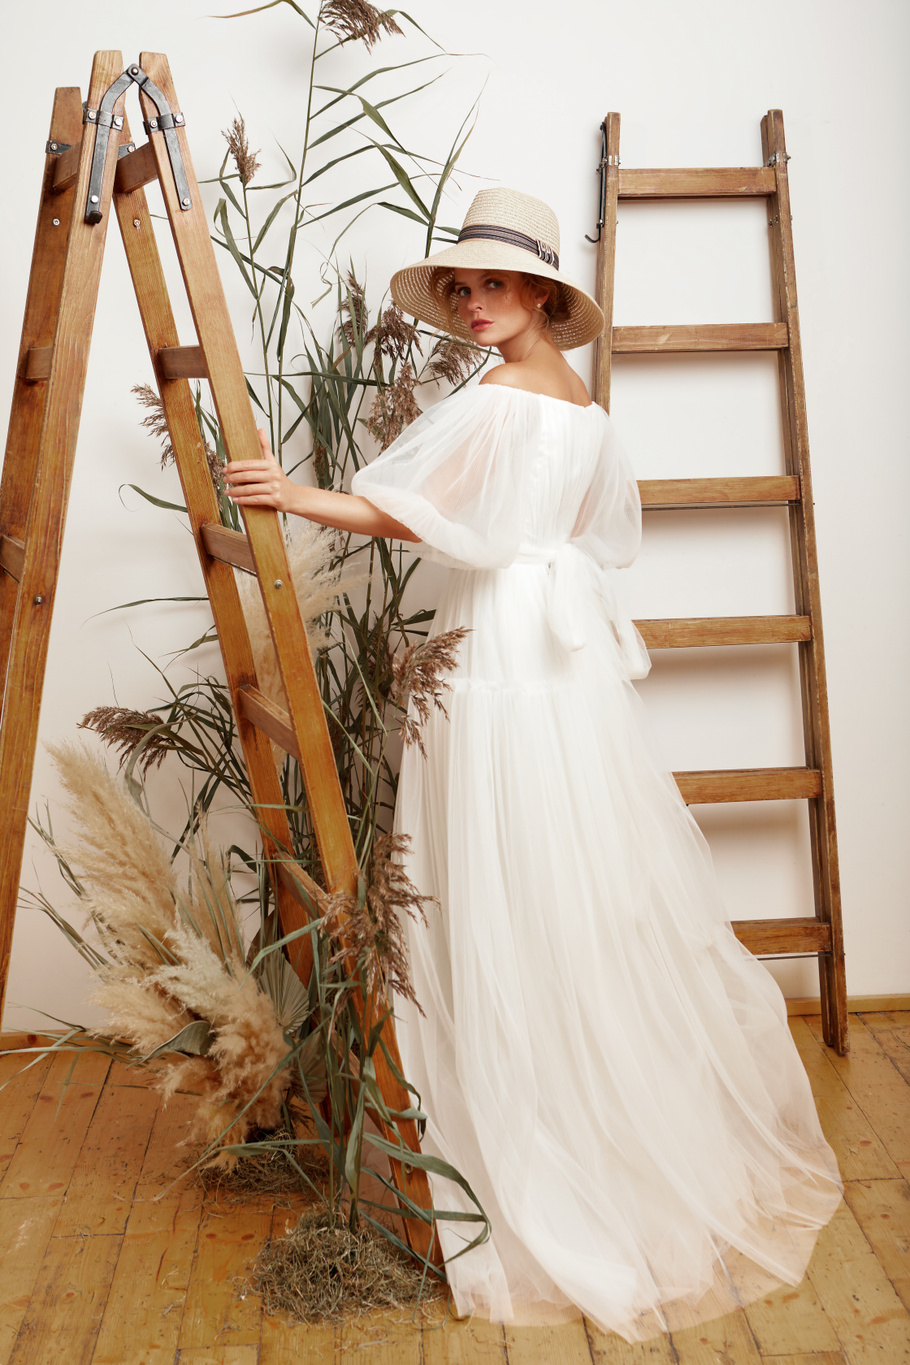 Купить свадебное платье «Ясмин» Мэрри Марк из коллекции 2020 года в Воронеже